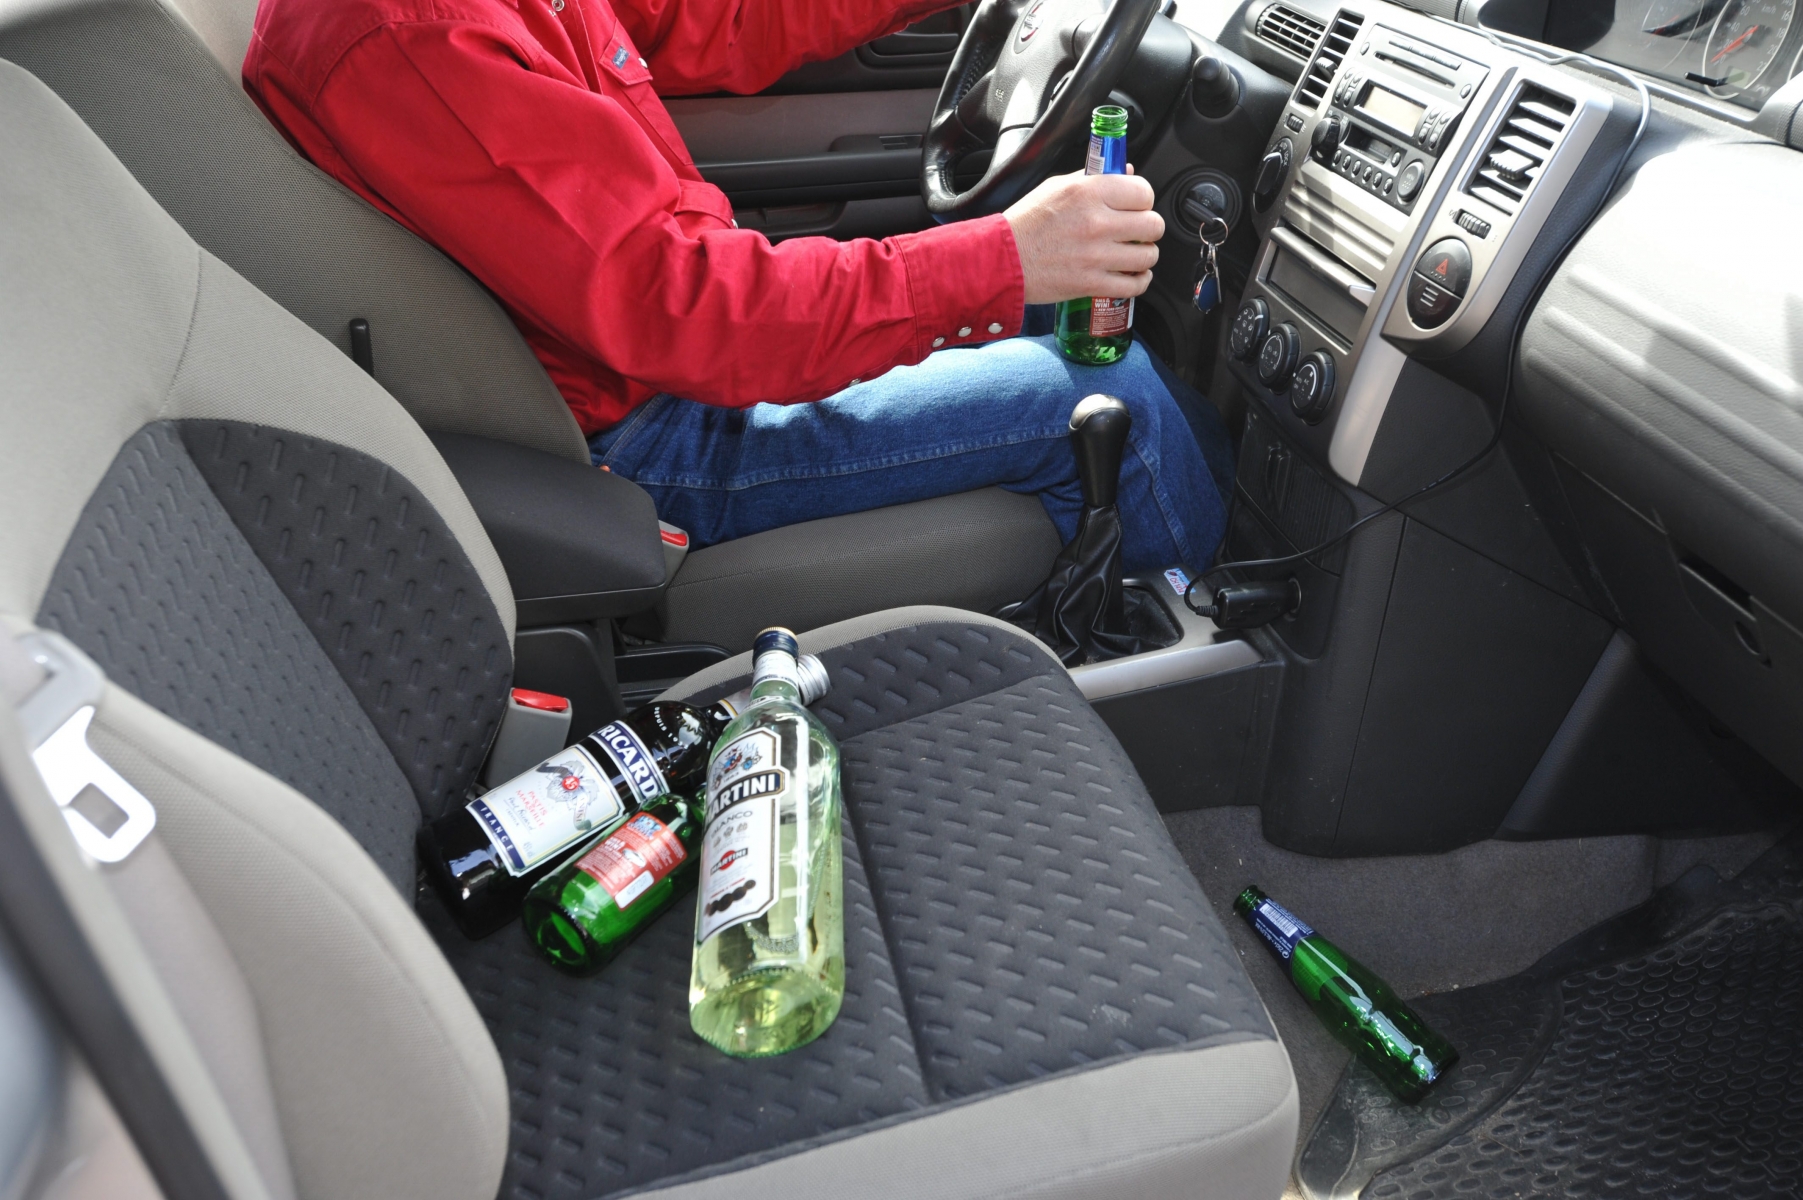 Le 6 septembre 2012, le conducteur affichait un taux d'alcoolémie de 5,45. Il avait notamment bu un demi-litre d'alcool à brûler.

20 mai 2012
Photo R Leuenberger